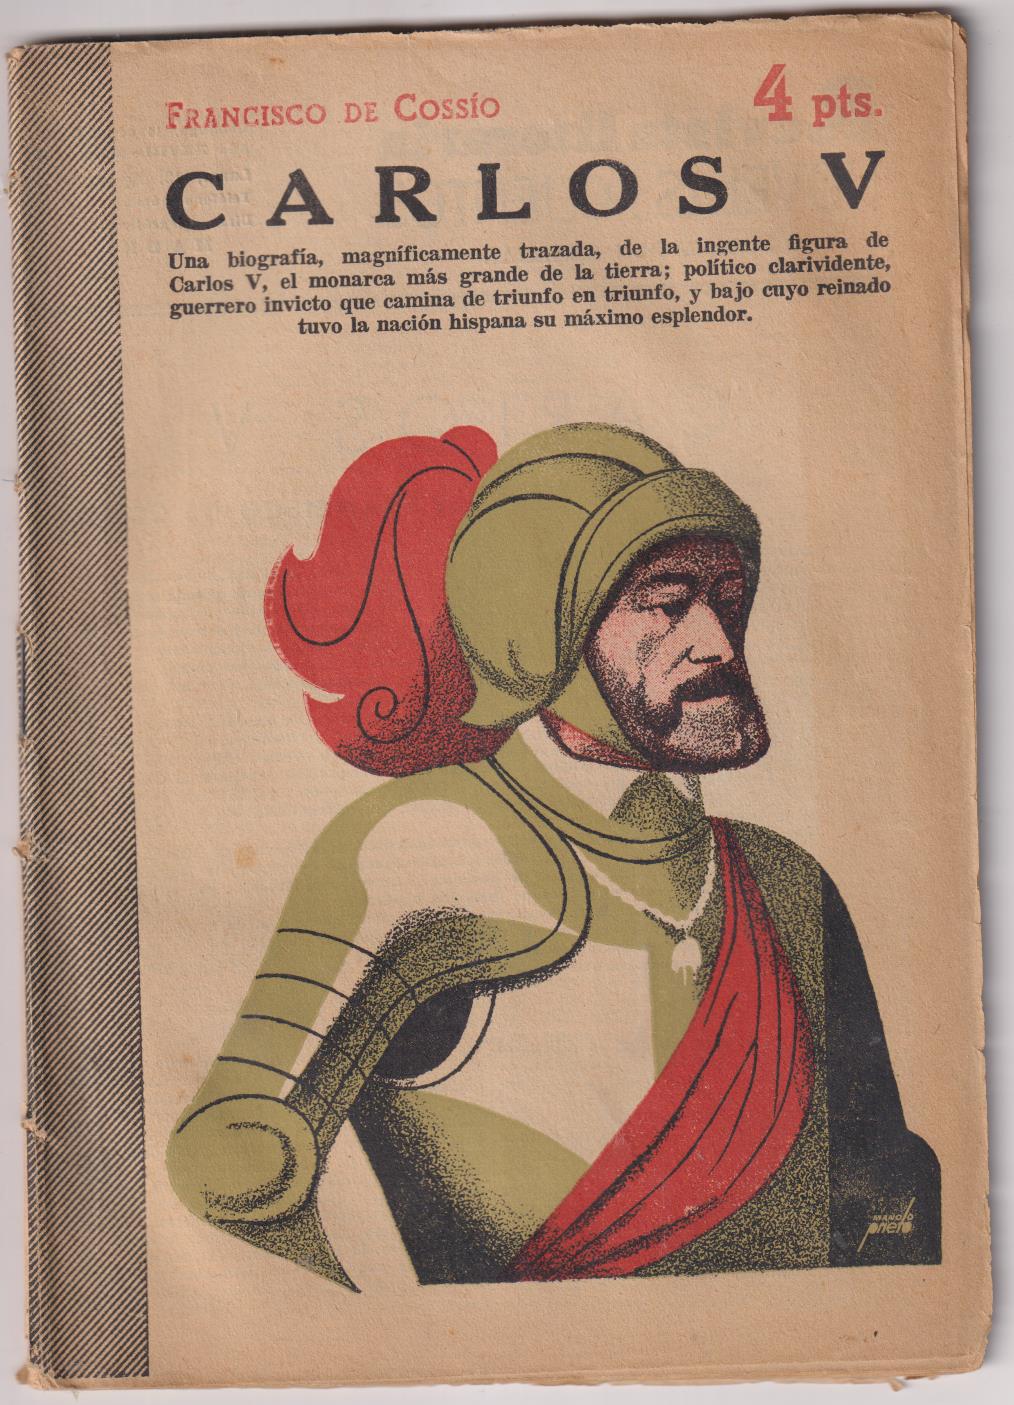 Revista Literaria Novelas y Cuentos nº 1327. F. de Cossío. Carlos V. Año 1956